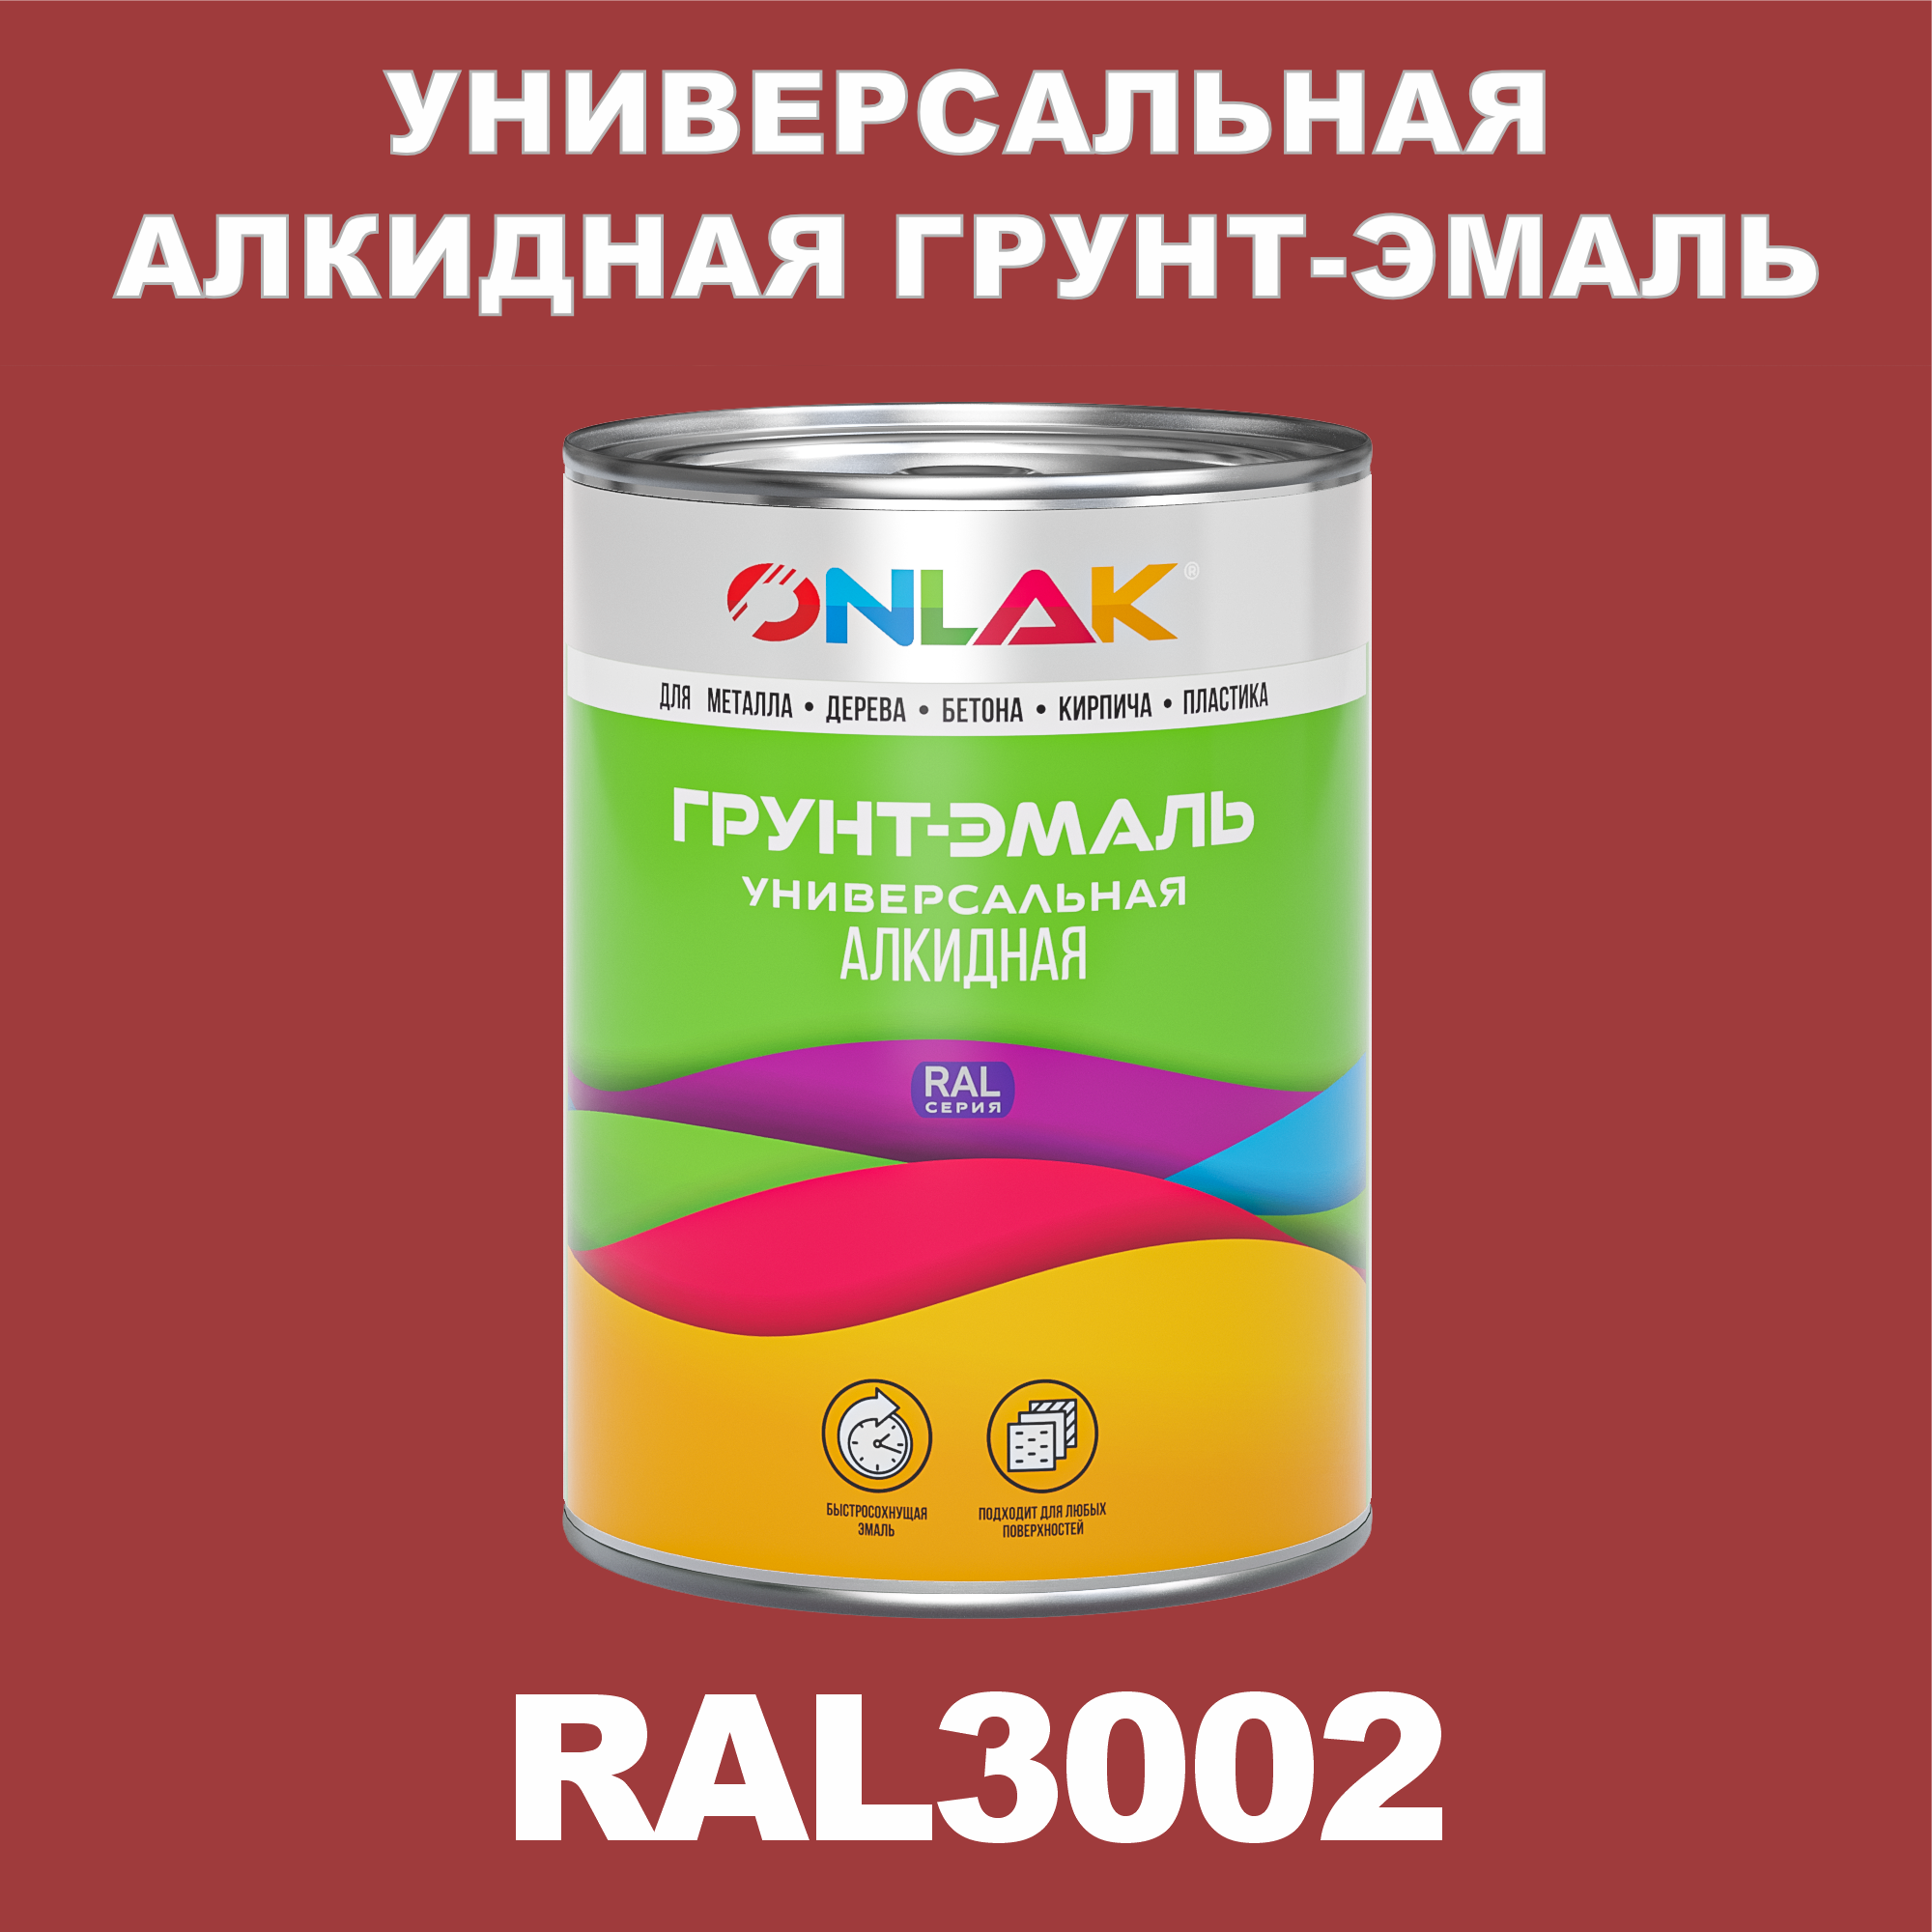 Грунт-эмаль ONLAK 1К RAL3002 антикоррозионная алкидная по металлу по ржавчине 1 кг грунт эмаль yollo по ржавчине алкидная серая 0 9 кг